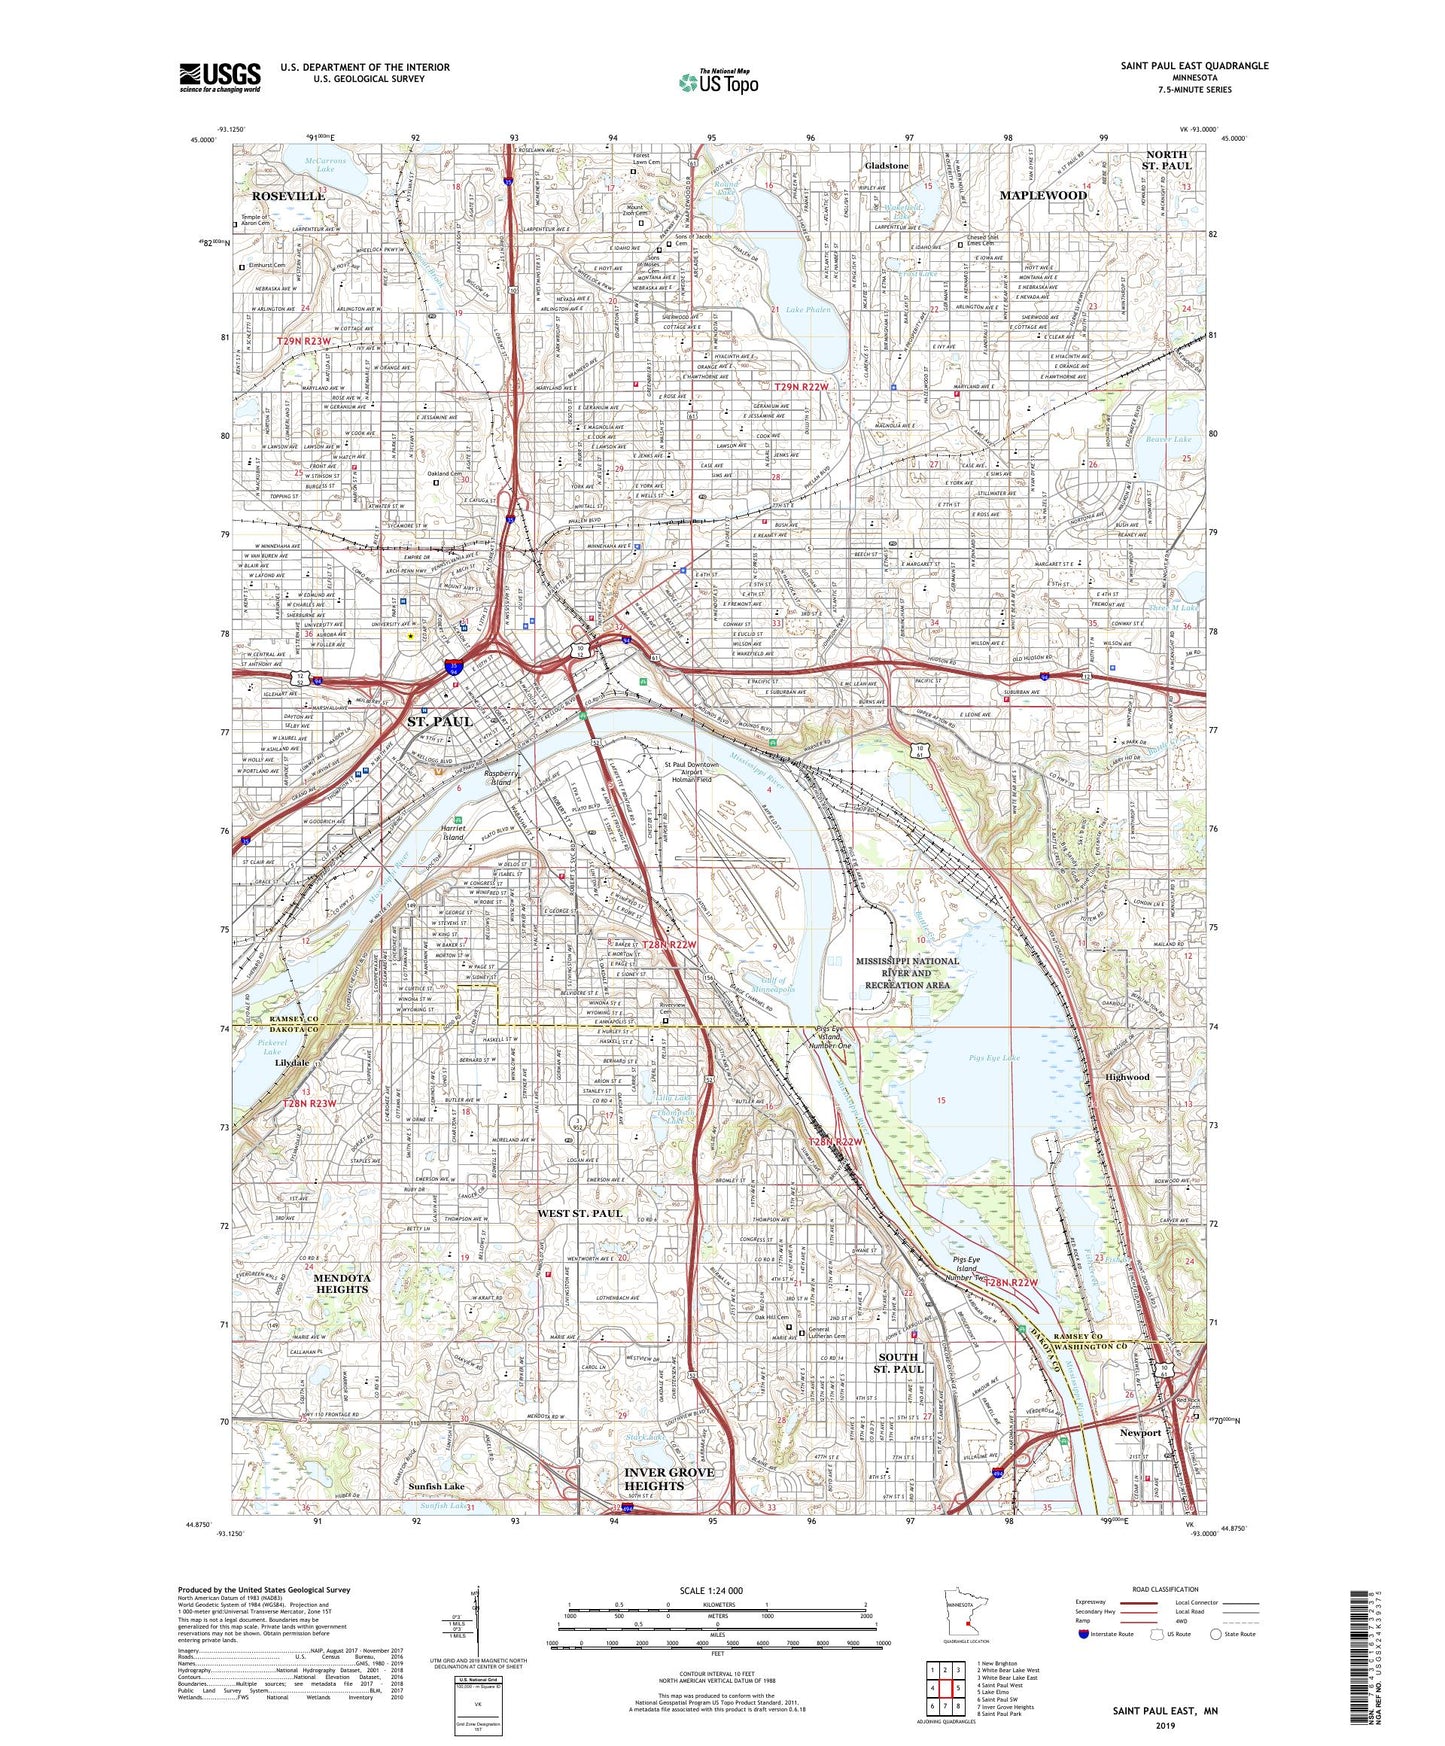 Saint Paul East Minnesota US Topo Map Image